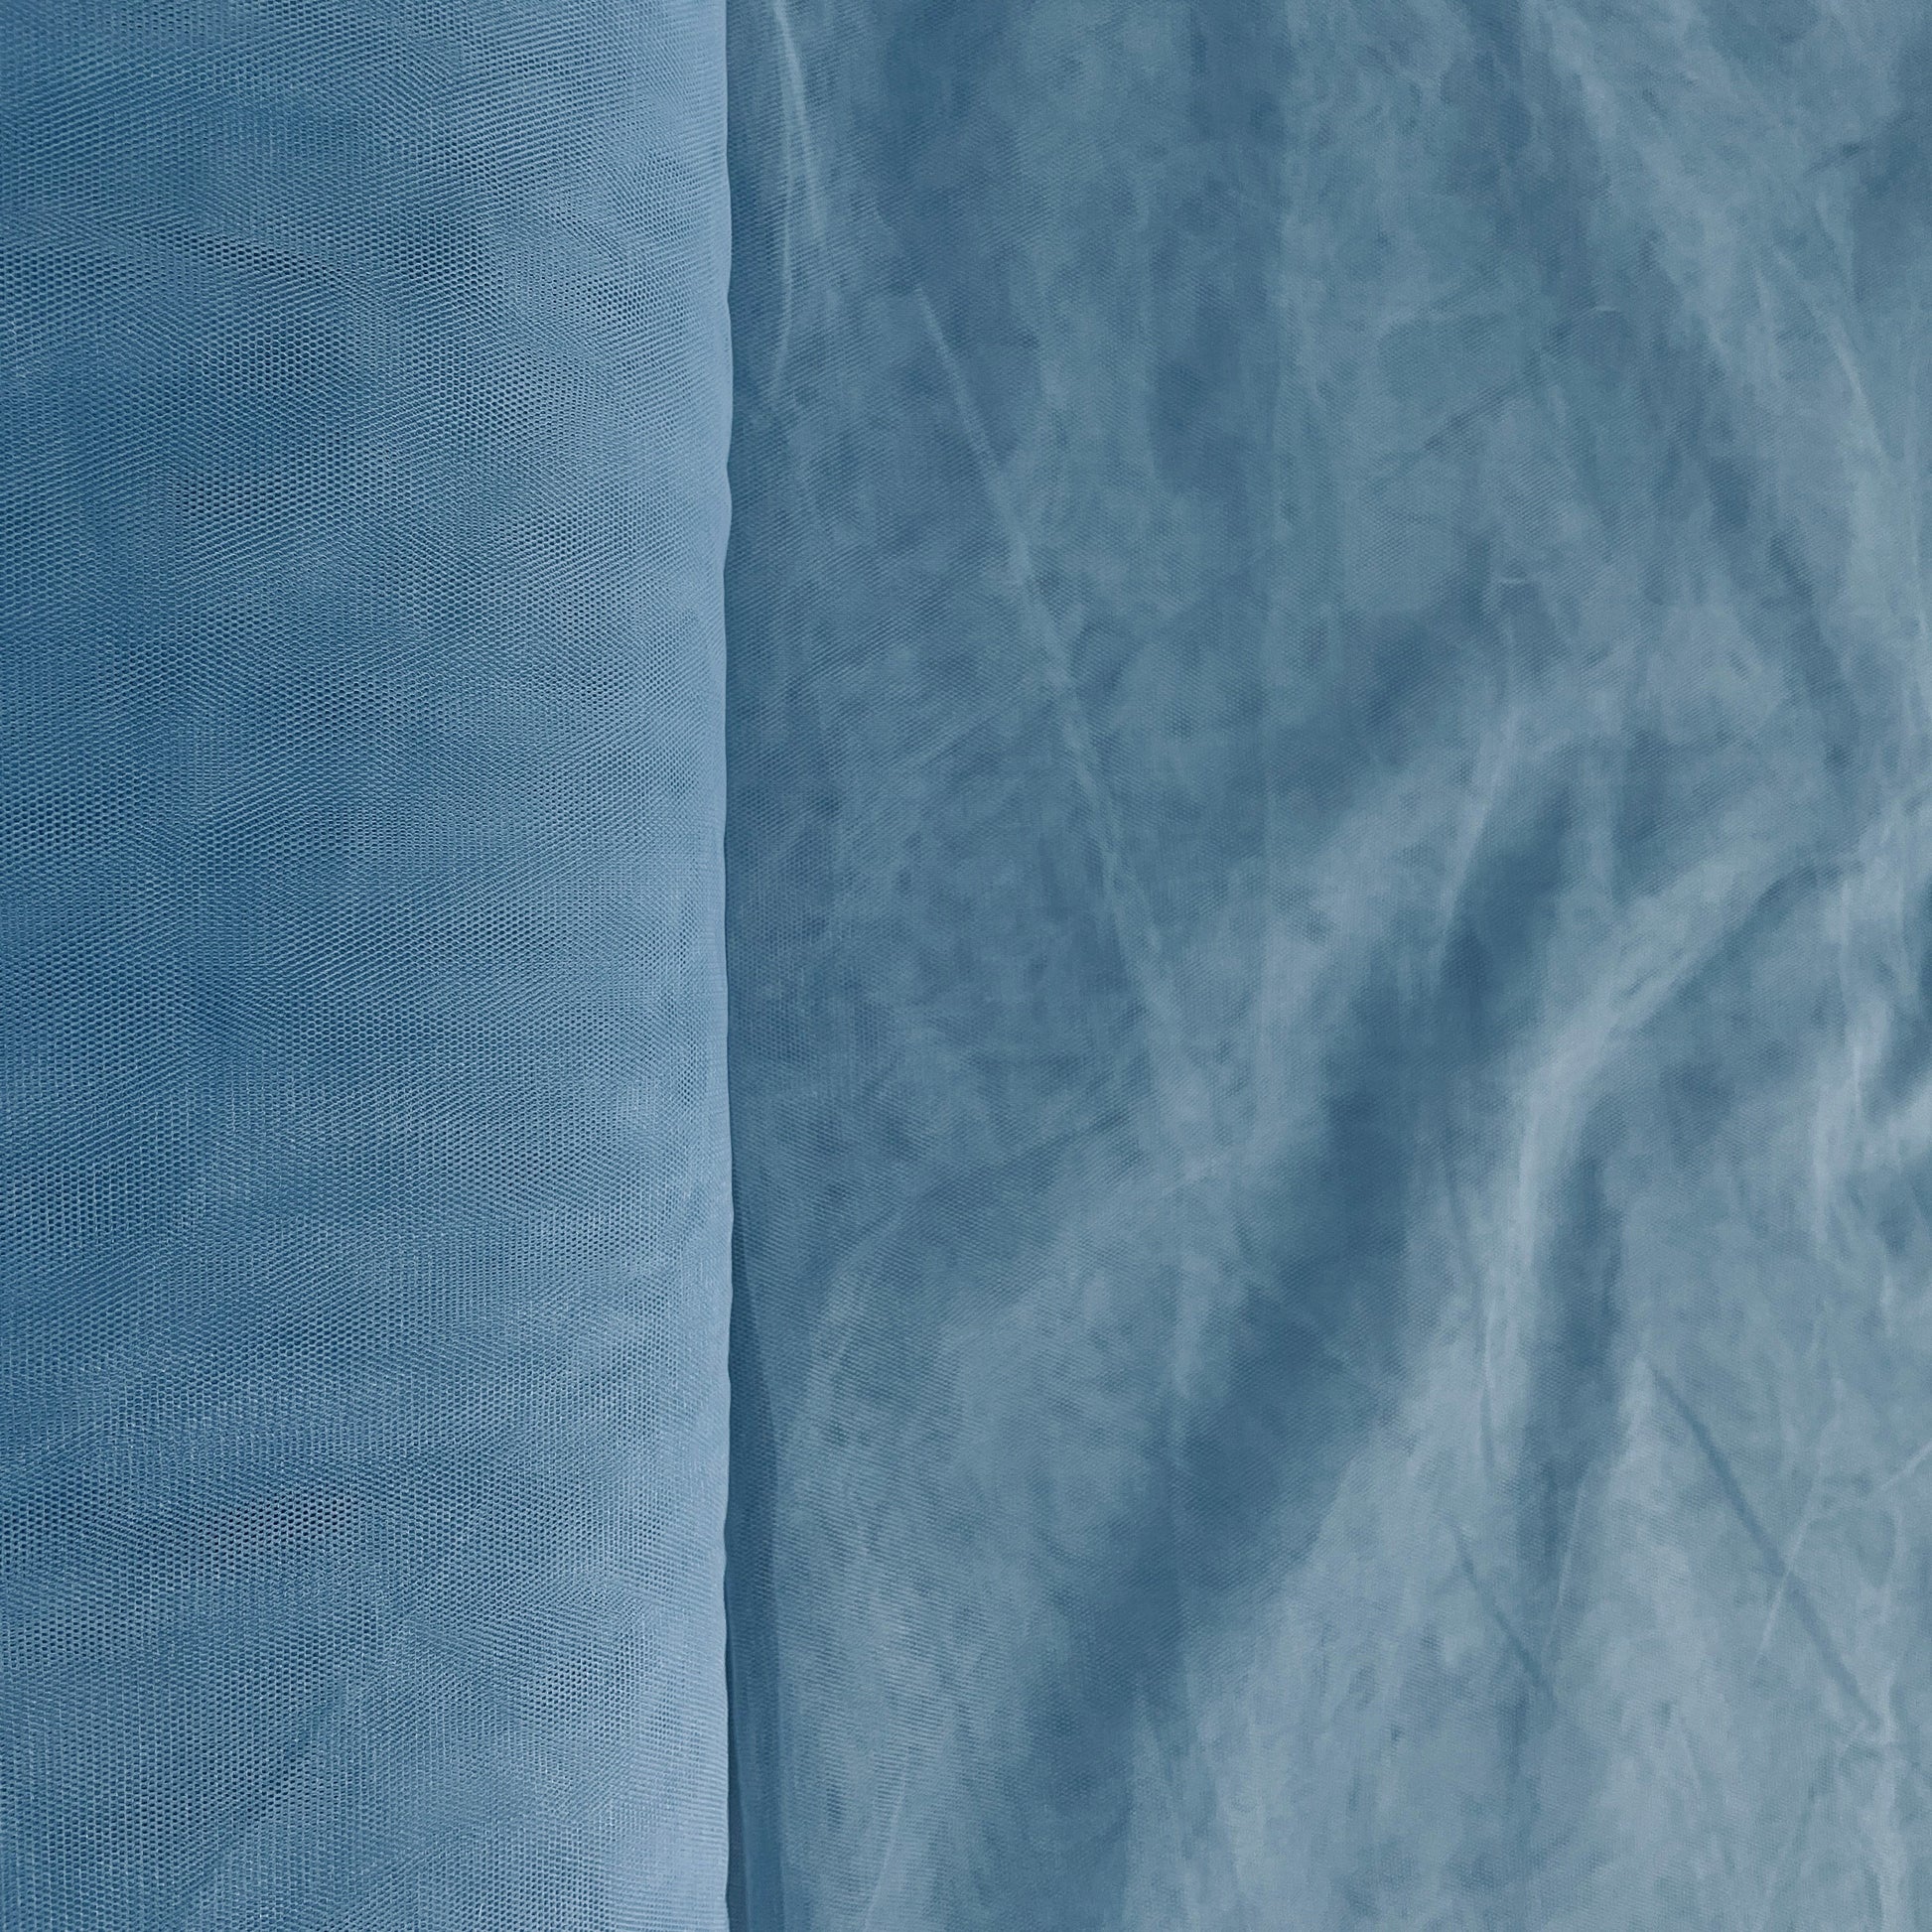 Sky Blue Solid Net Fabric - TradeUNO